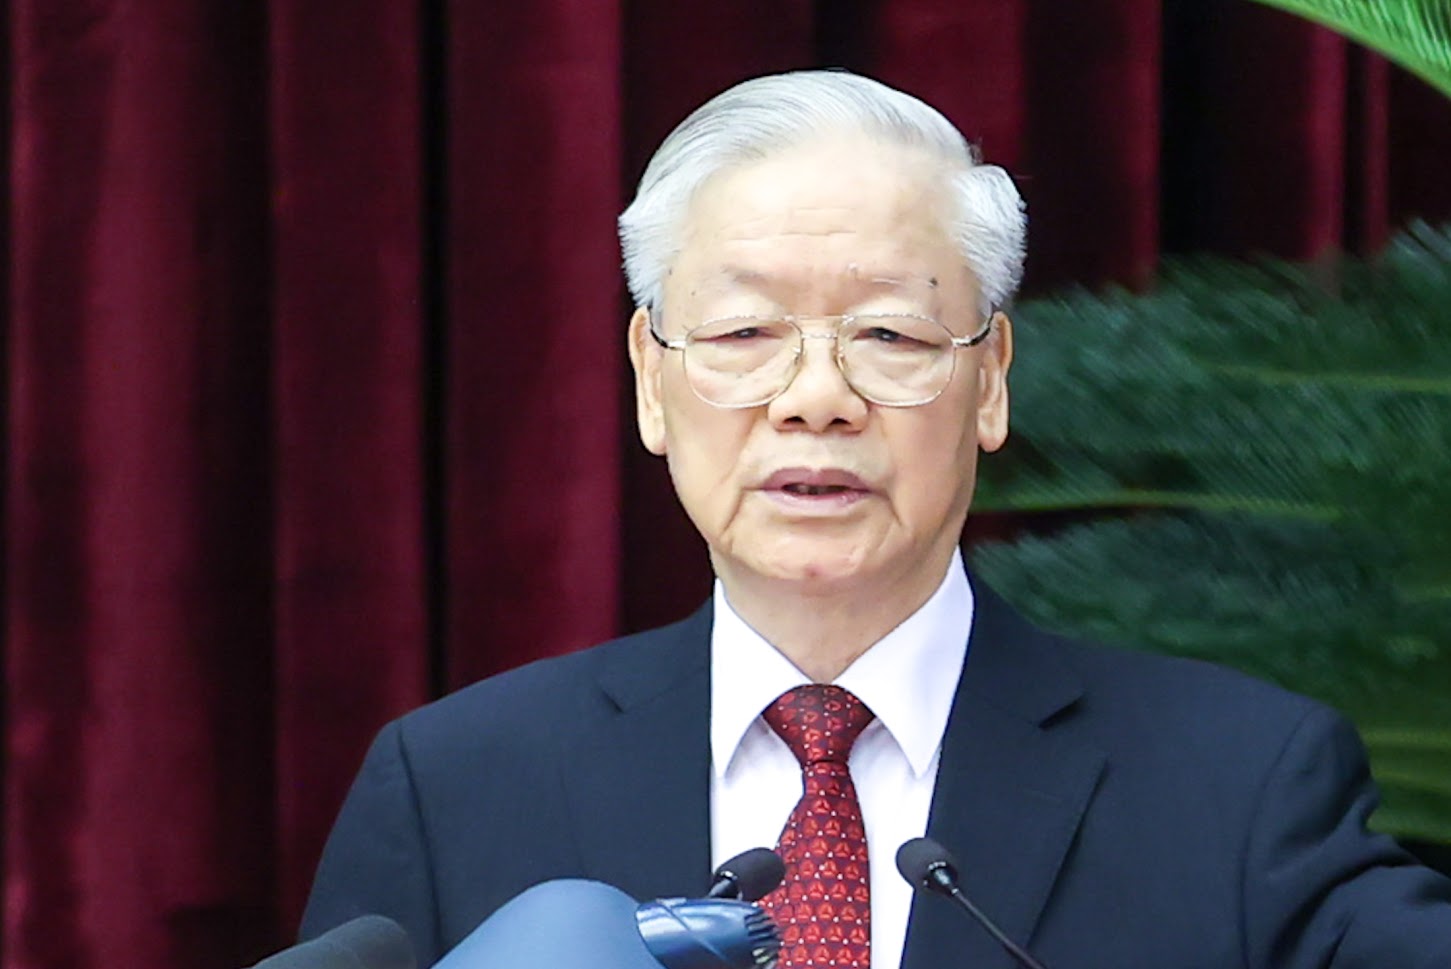 Phát biểu của Tổng Bí thư Nguyễn Phú Trọng bế mạc Hội nghị Trung ương giữa nhiệm kỳ - Ảnh 1.